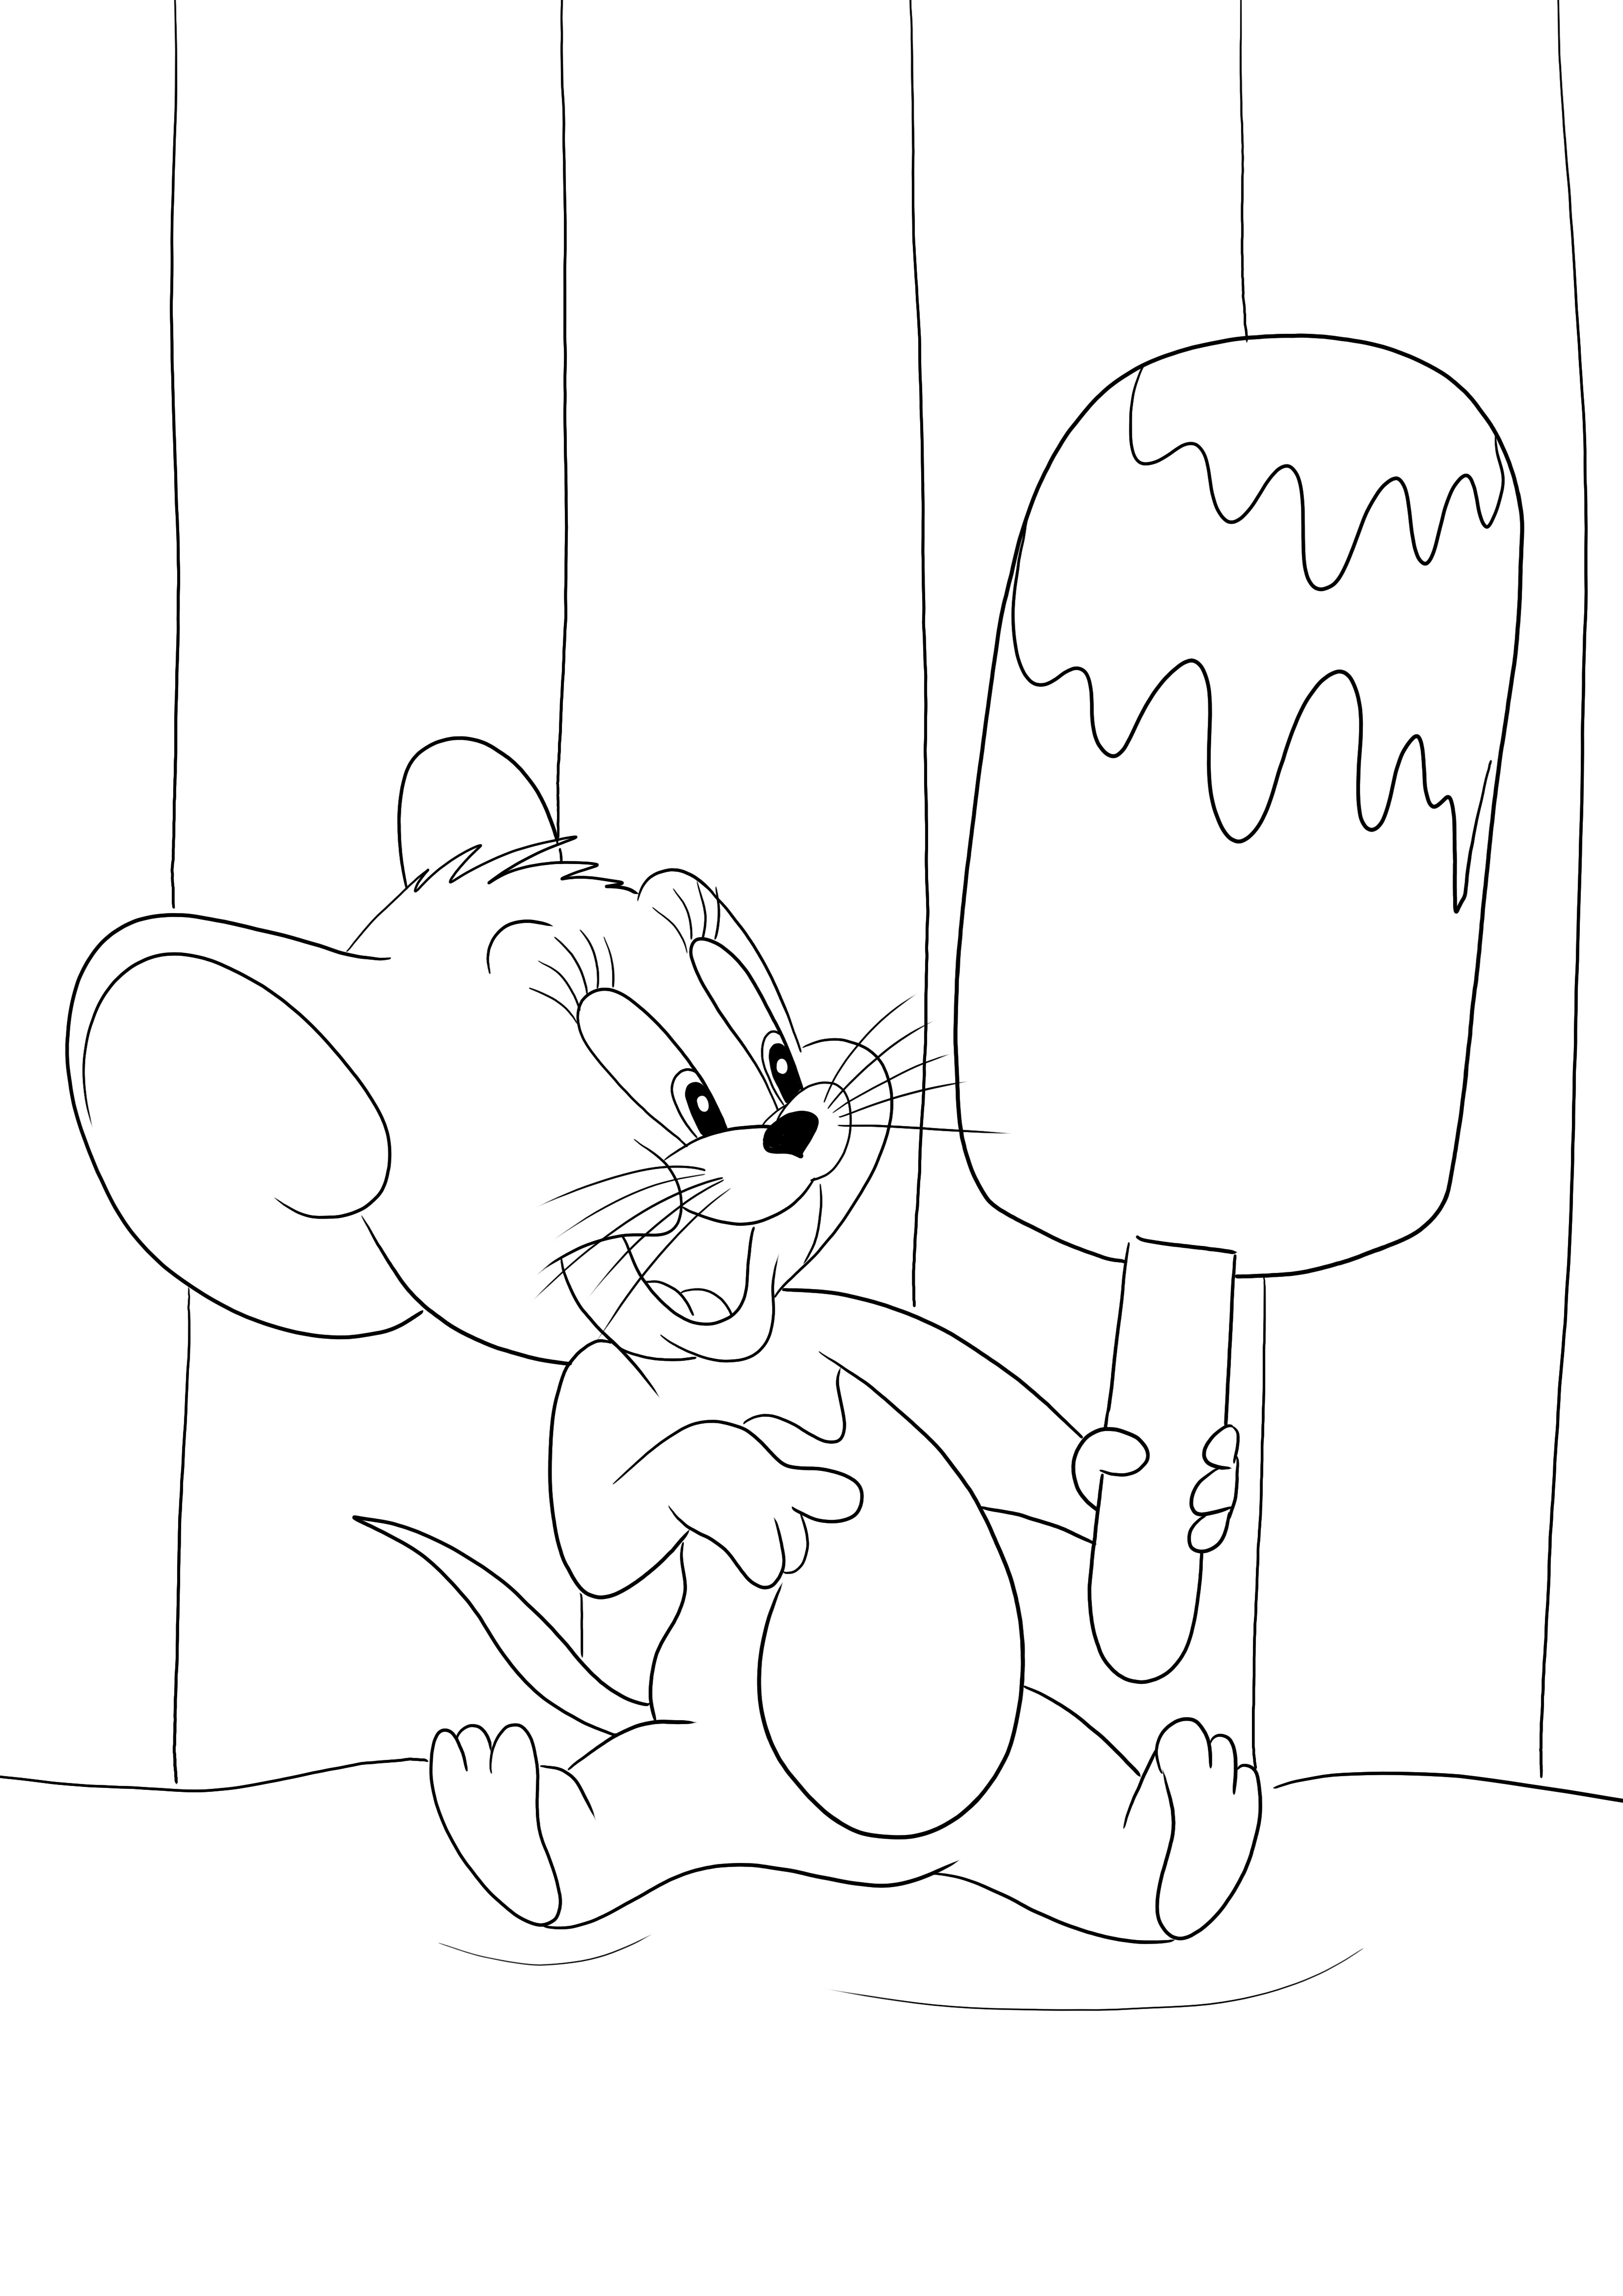 Jerry e il suo grande gelato è pronto per essere stampato e colorato gratuitamente dai bambini